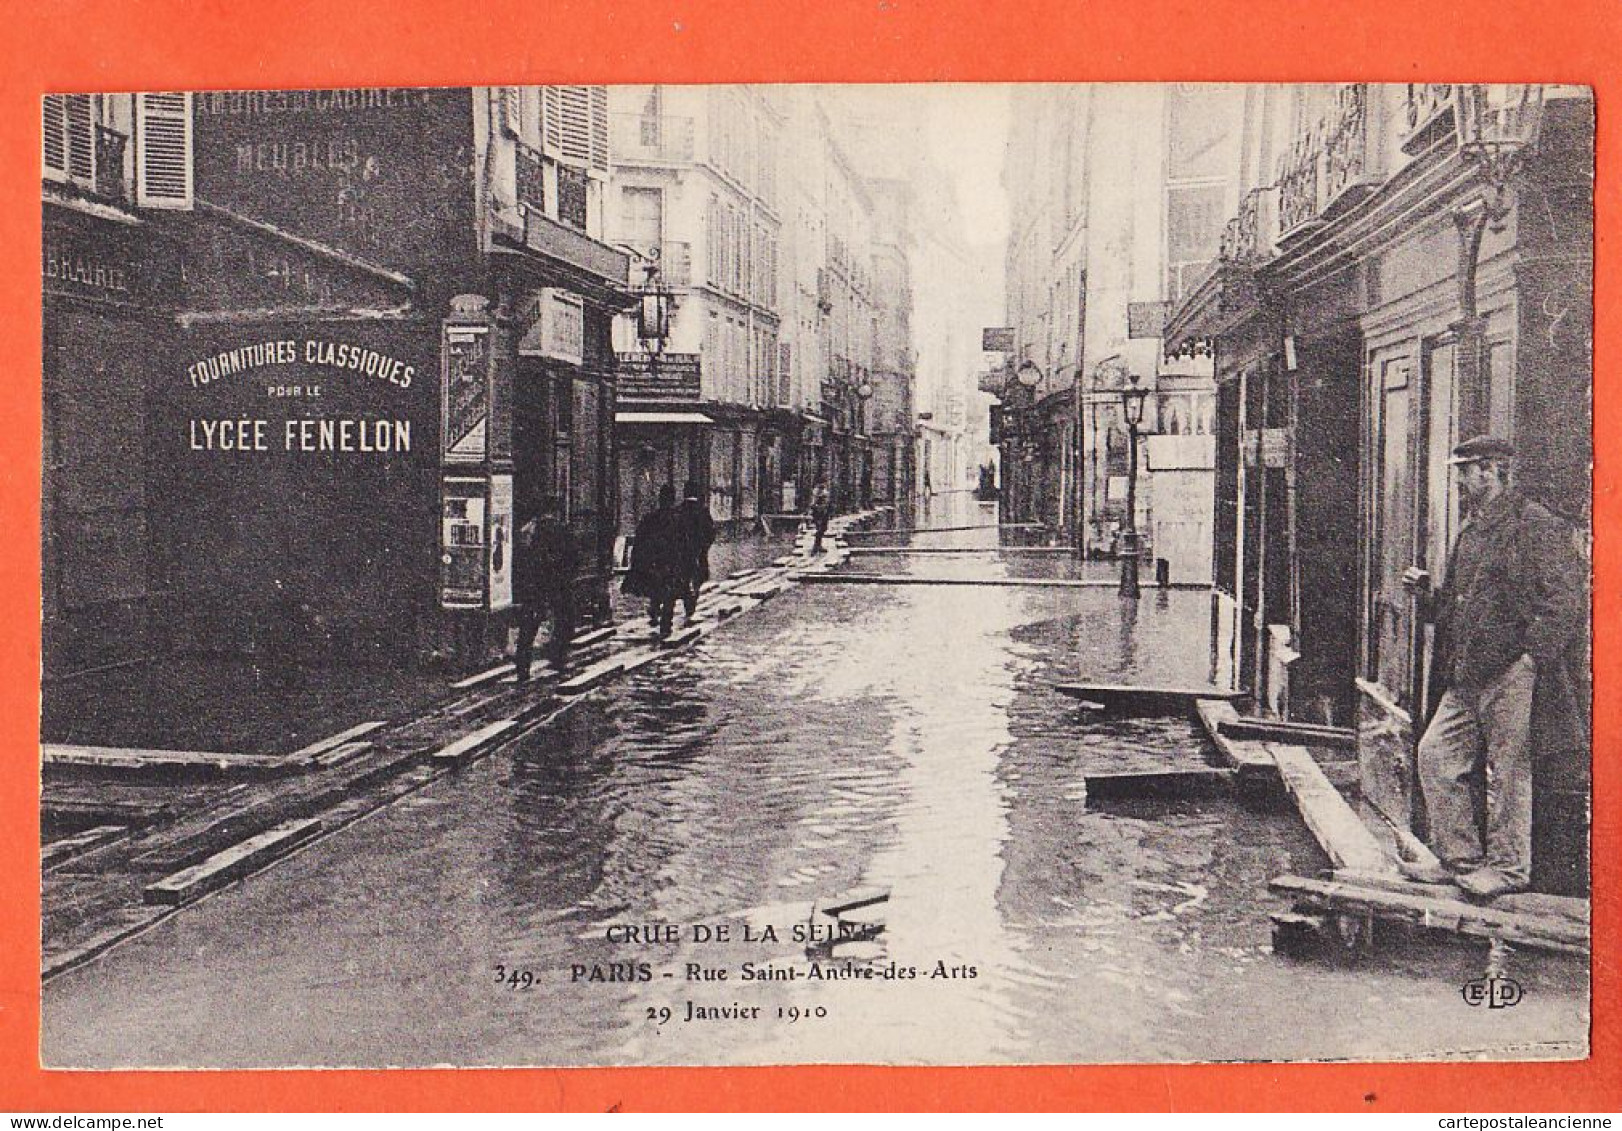 05137 / ⭐ ◉ PARIS VII ◉ Crue SEINE 29 Janvier 1910 ◉ Passerelle Rue SAINT-ANDRE-des-ARTS ◉ ELD LE DELEY 349 St - Überschwemmung 1910